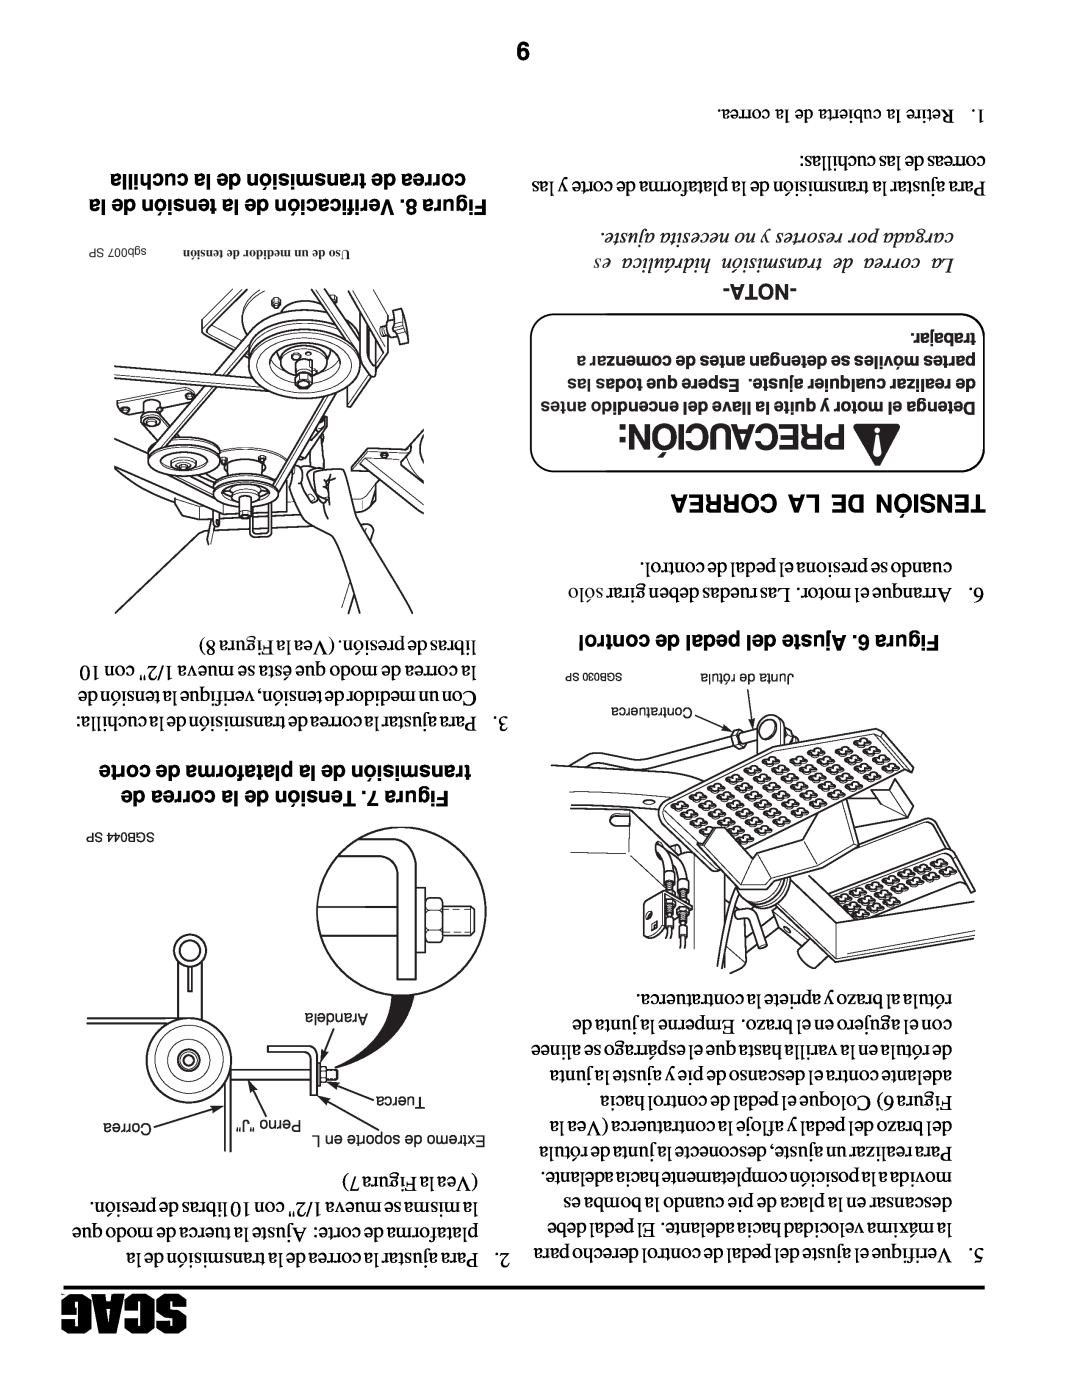 Scag Power Equipment STHM manual Precaución, Correa La De Tensión, cuchilla la de transmisión de correa, Nota 